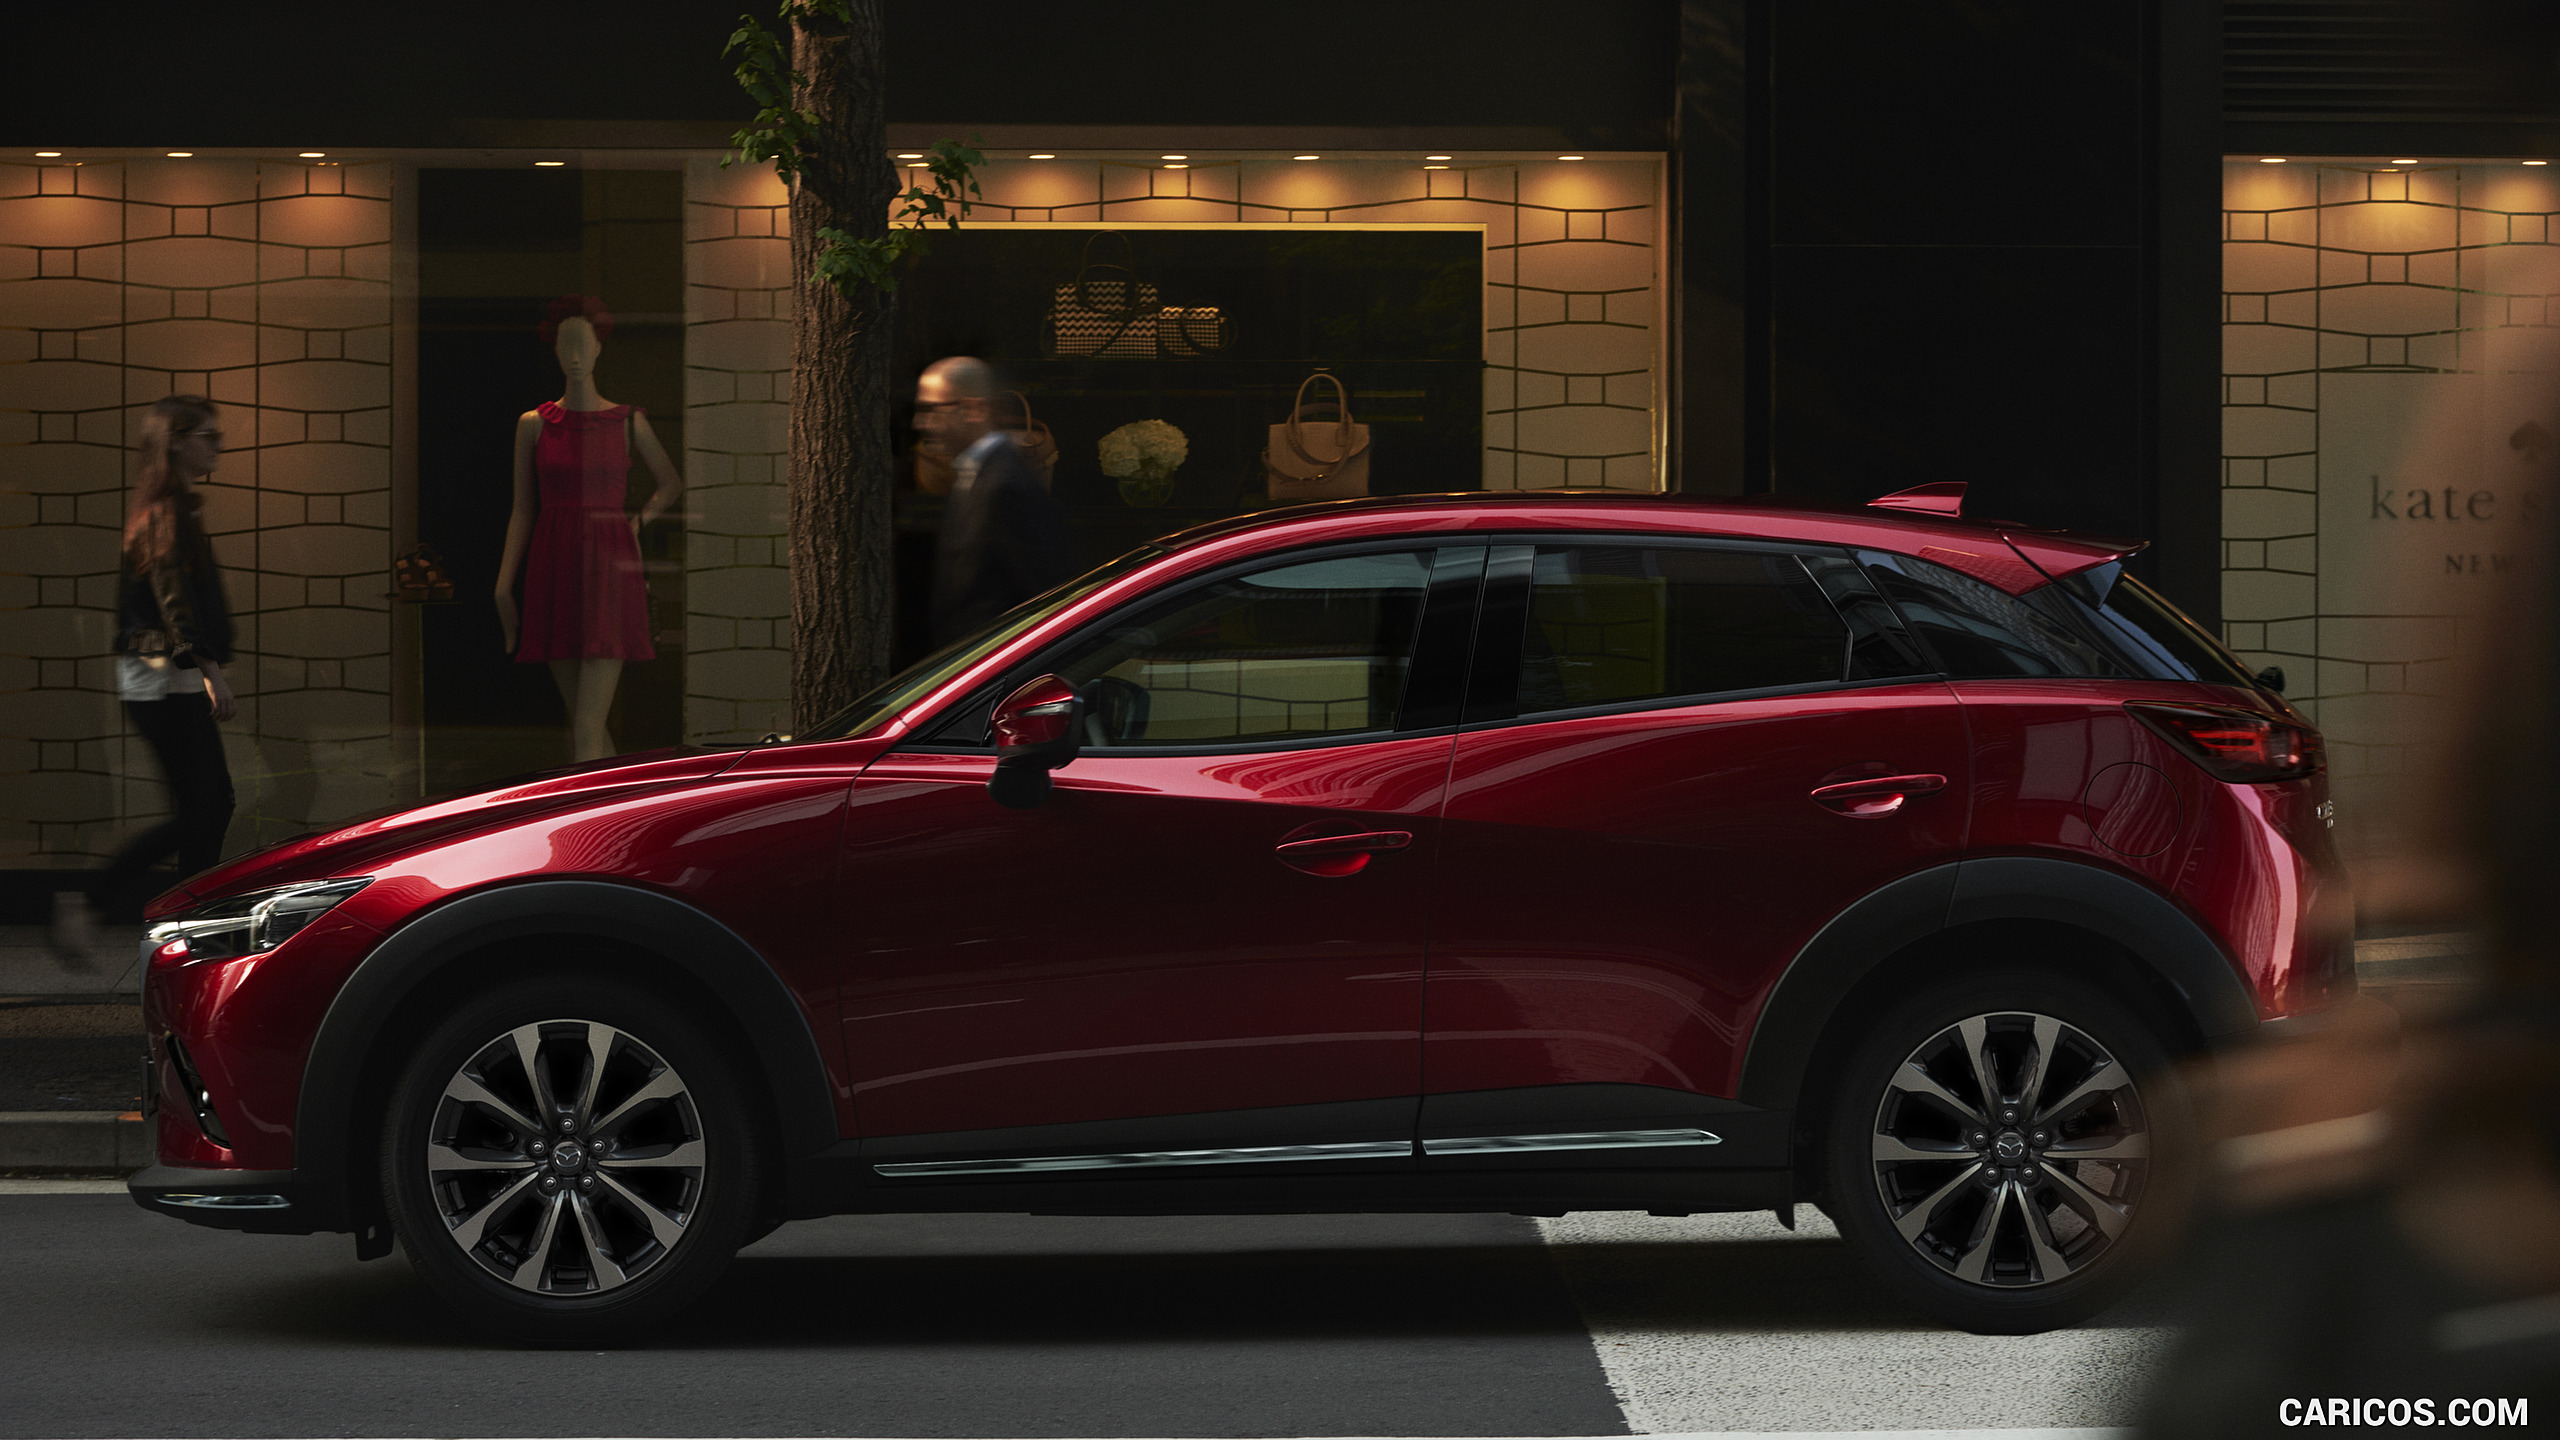 2019 Mazda CX-3 - Side, #2 of 85